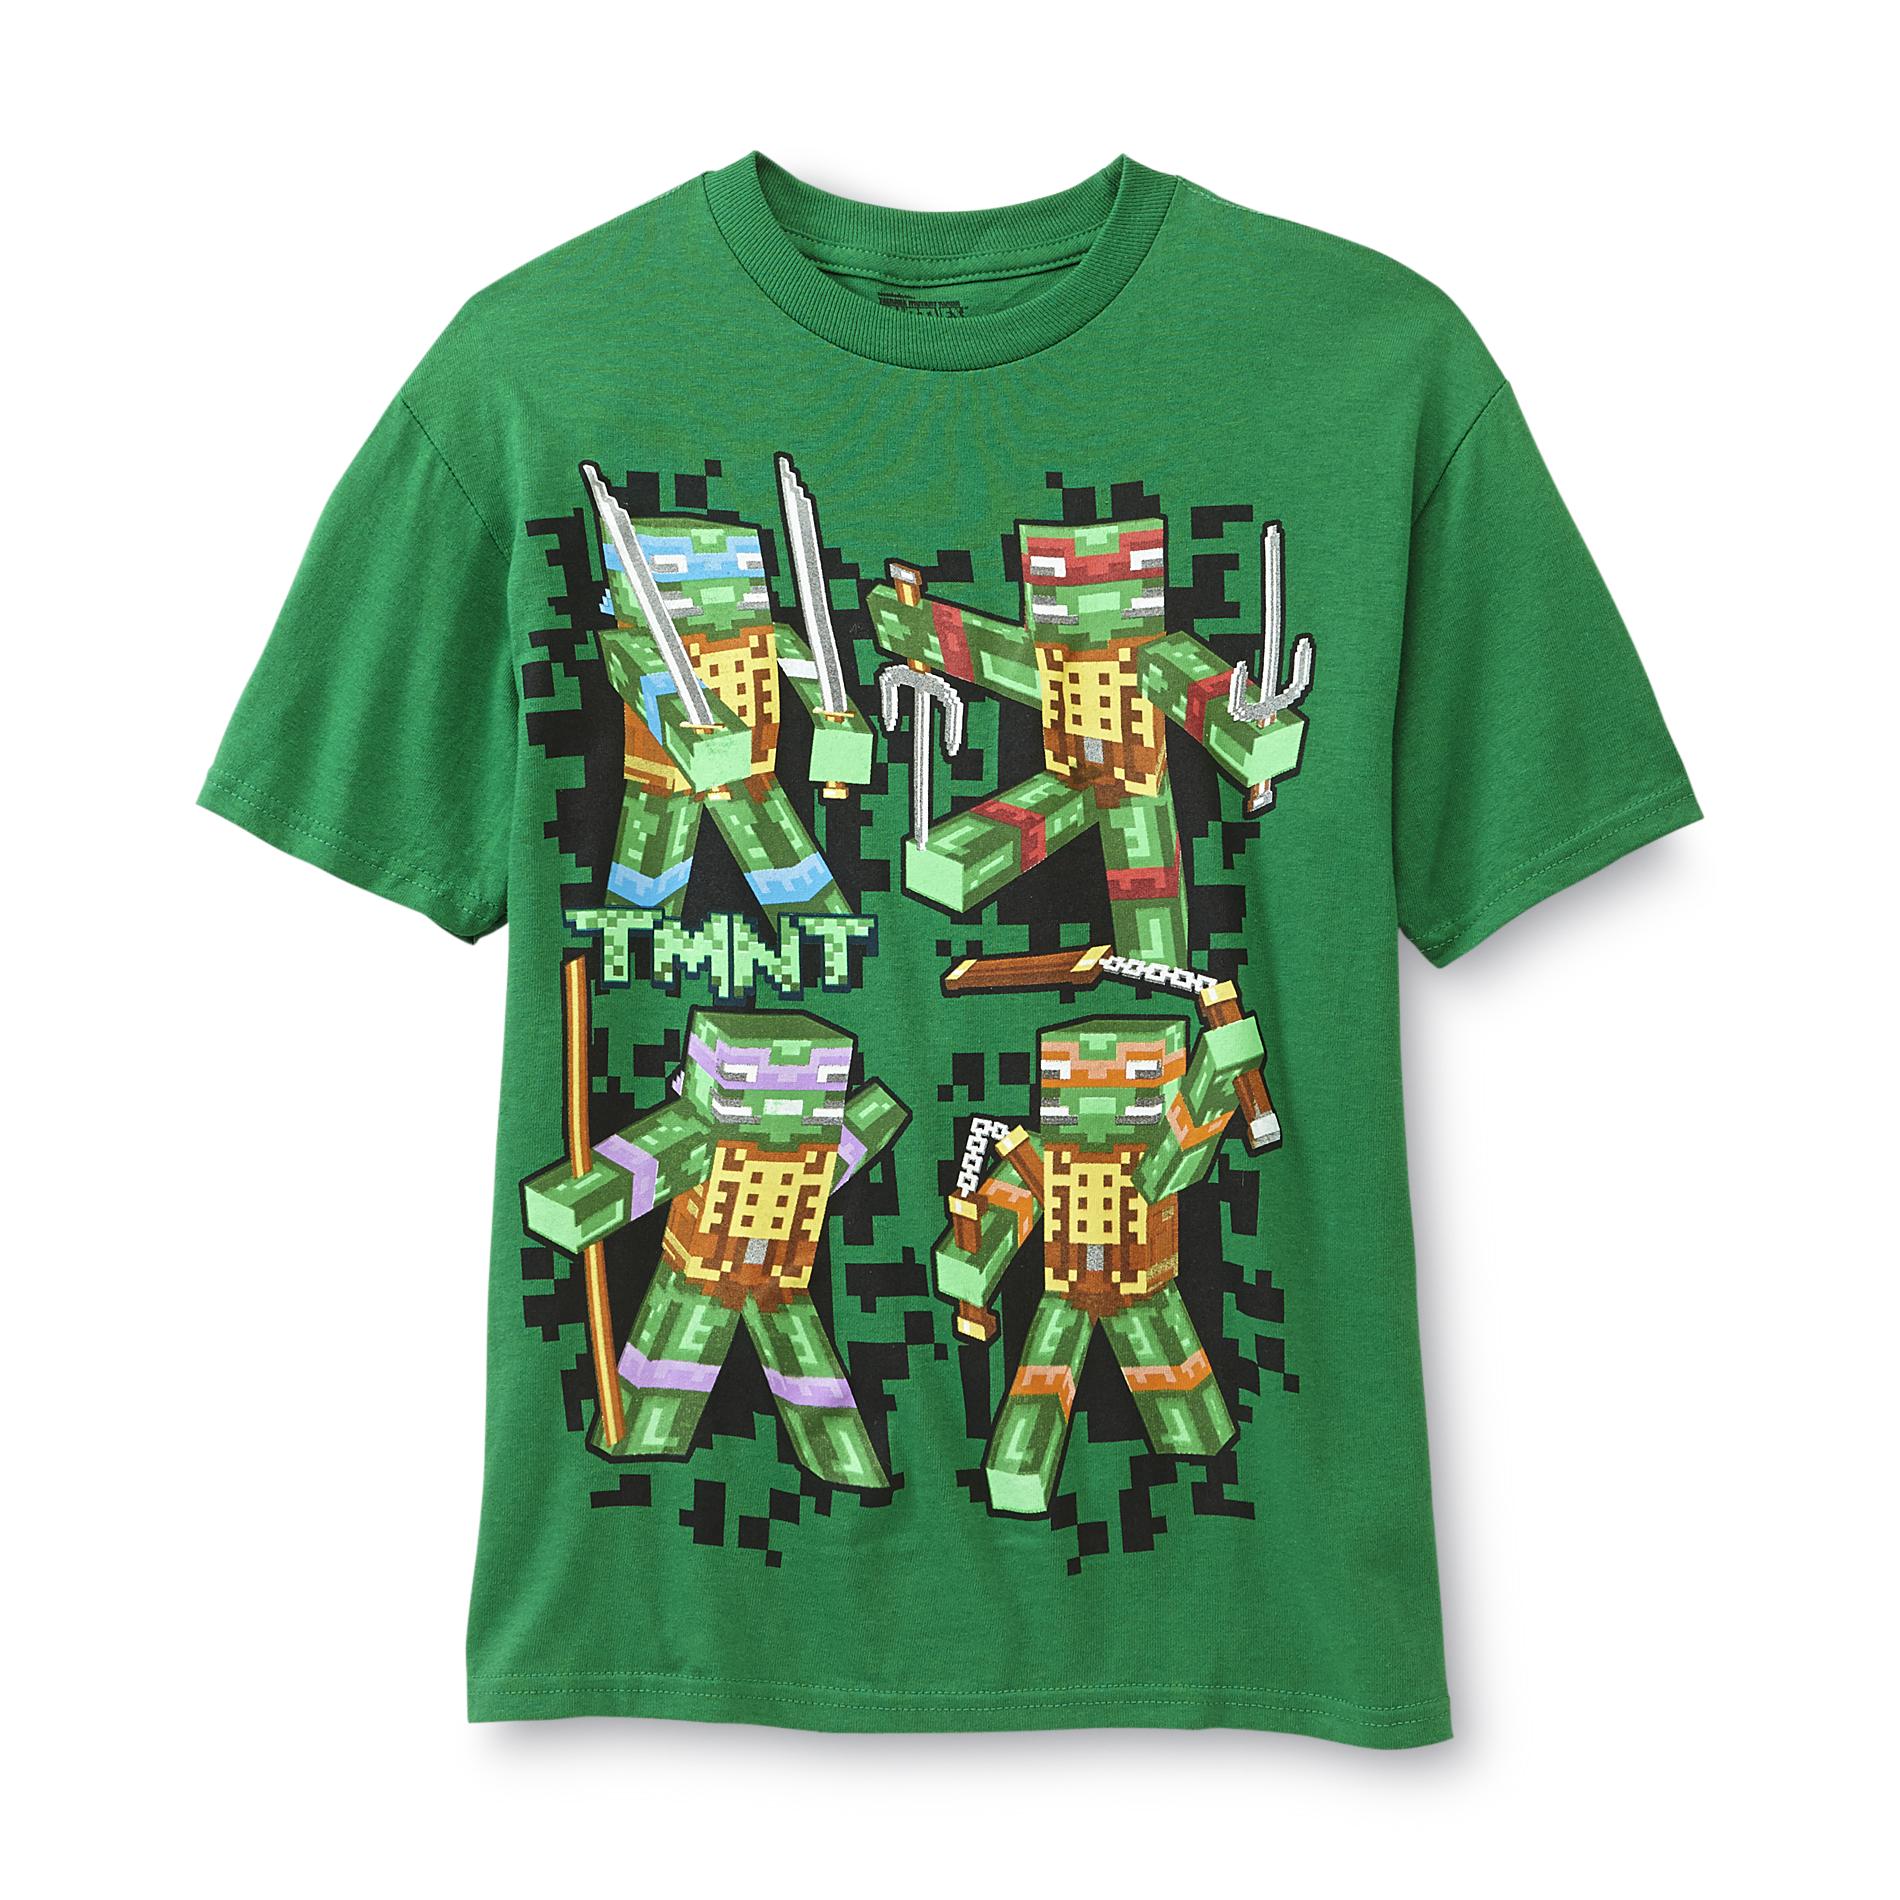 Nickelodeon Teenage Mutant Ninja Turtles Boy's Graphic T-Shirt - Minecraft